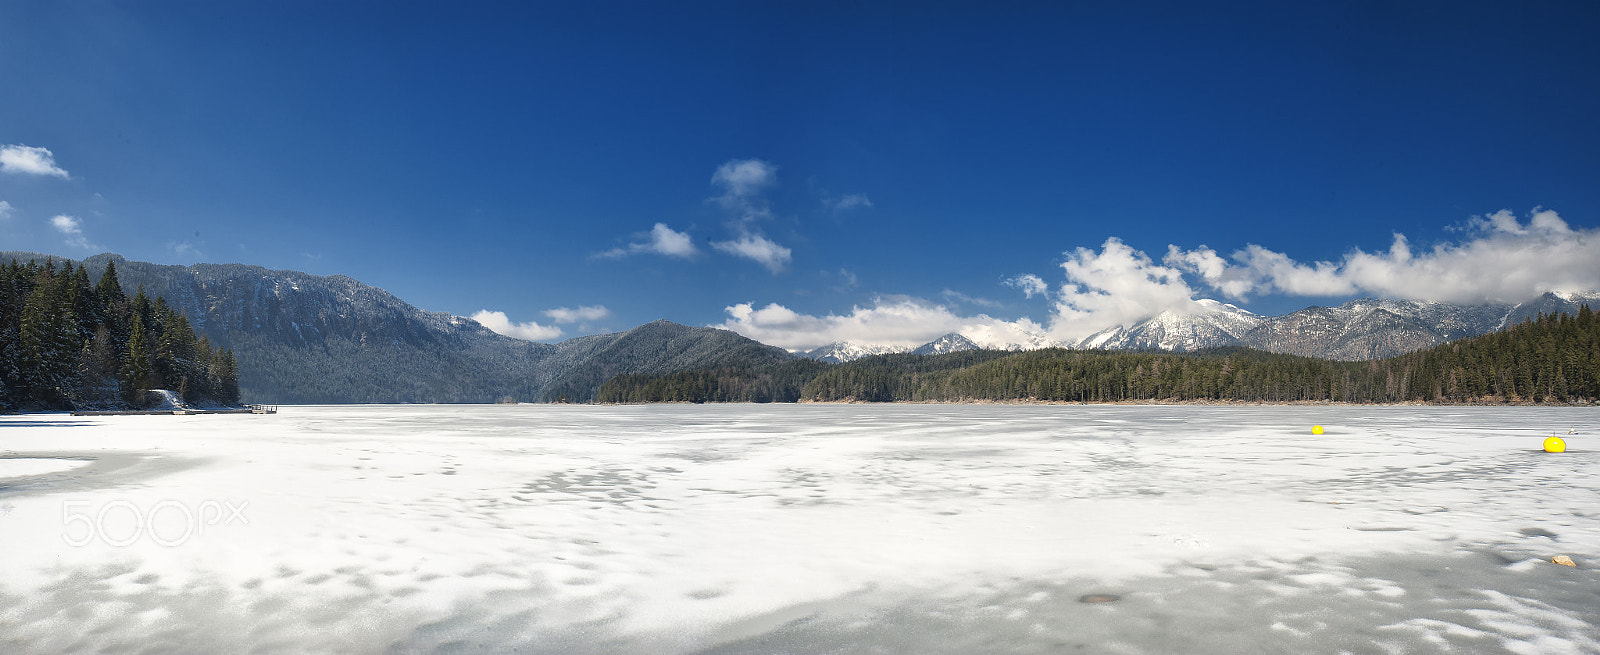 Nikon D700 sample photo. Donmuş göl panoramic (frozen lake) photography